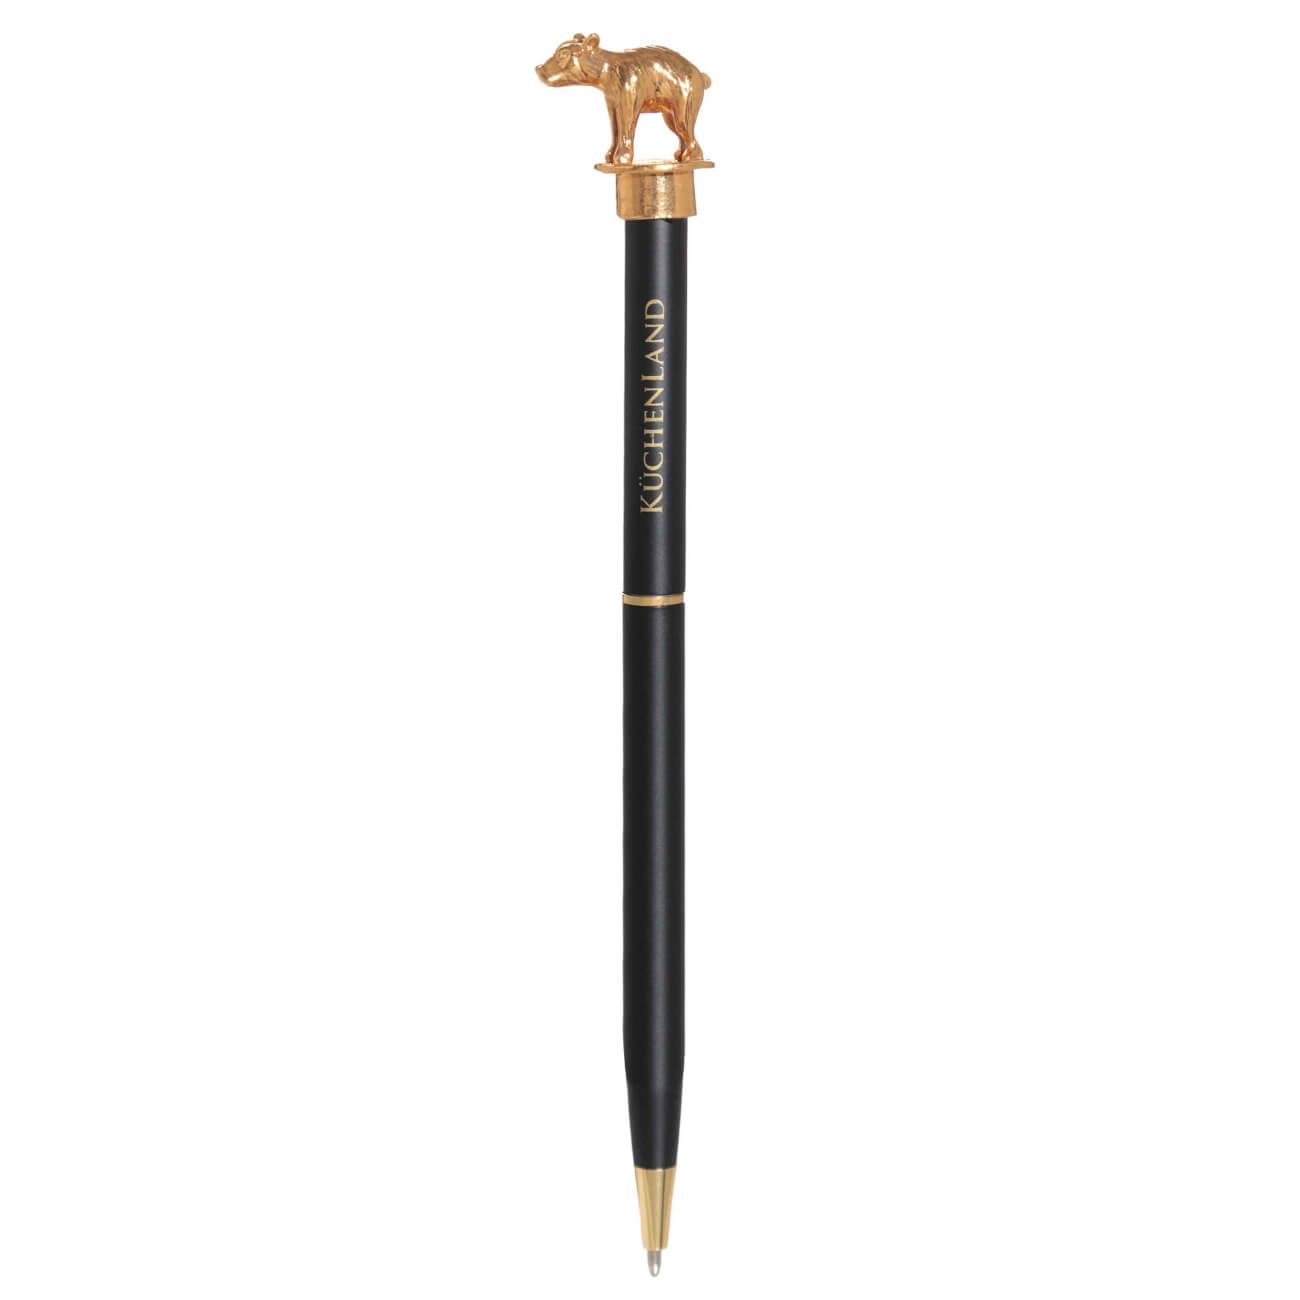 Ручка шариковая, 14 см, с фигуркой, сталь, черная, Медведь, Draw figure шариковая ручка kores